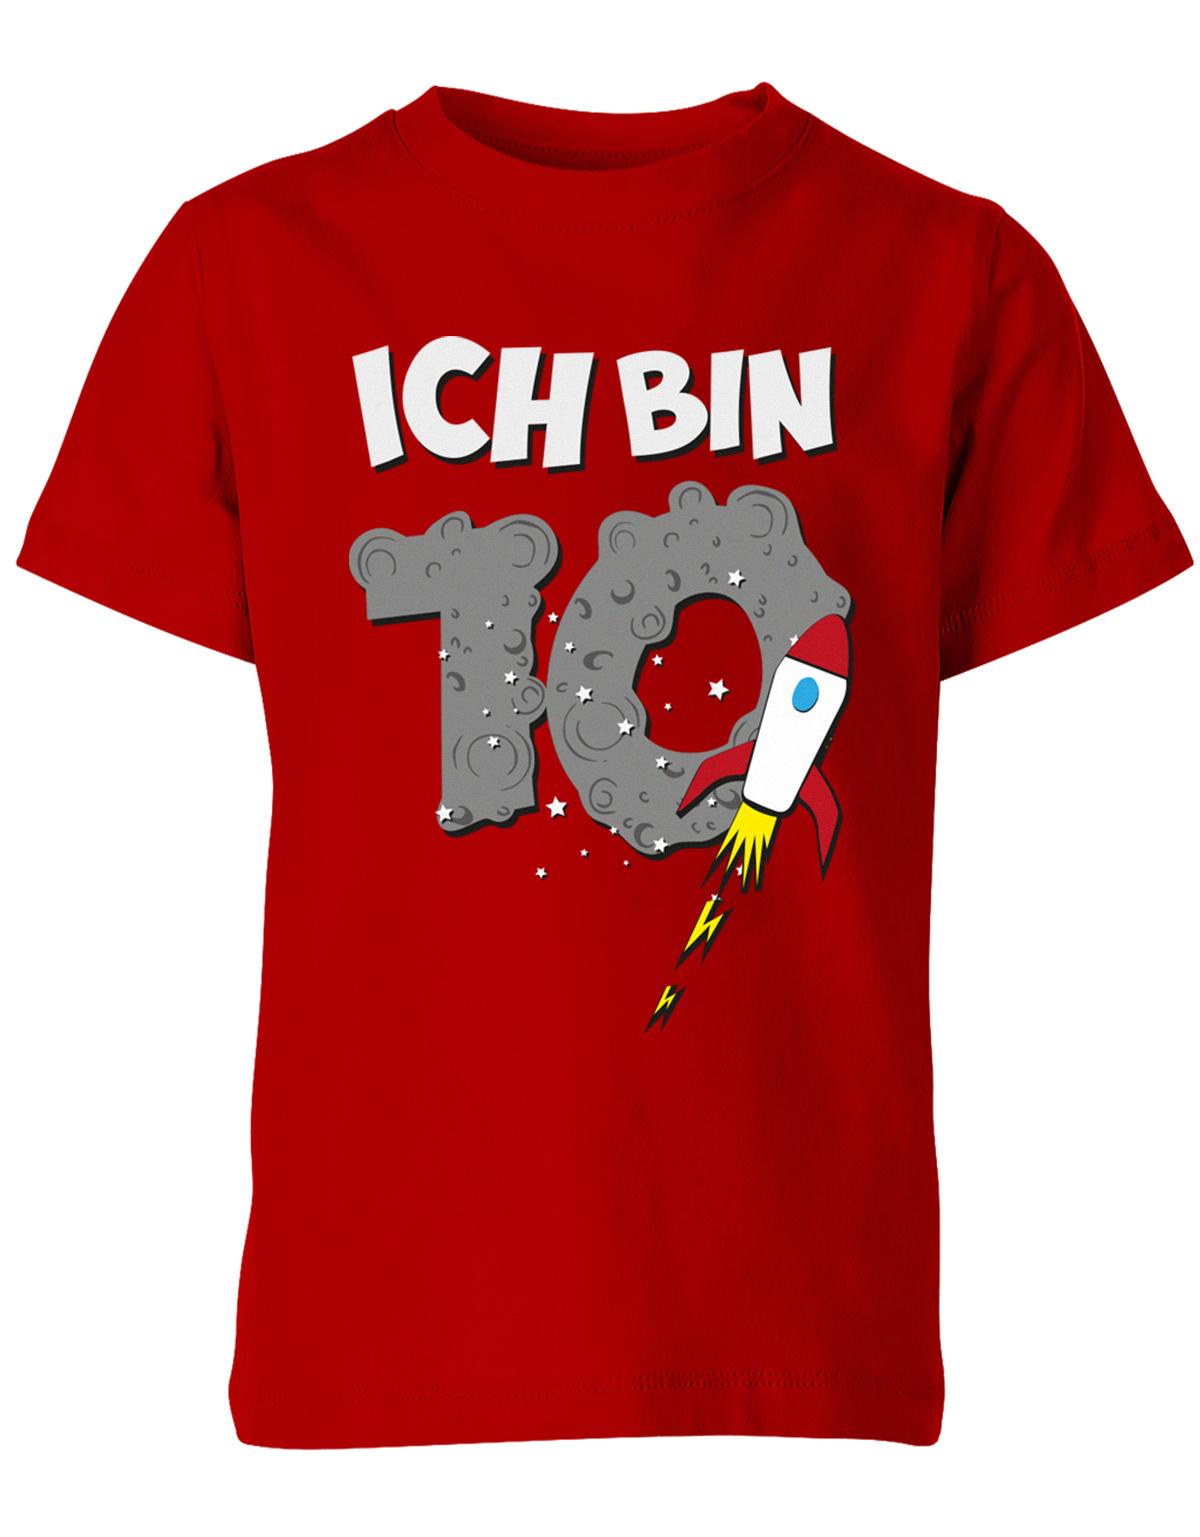 ich-bin-10-weltraum-rakete-planet-geburtstag-kinder-shirt-rot